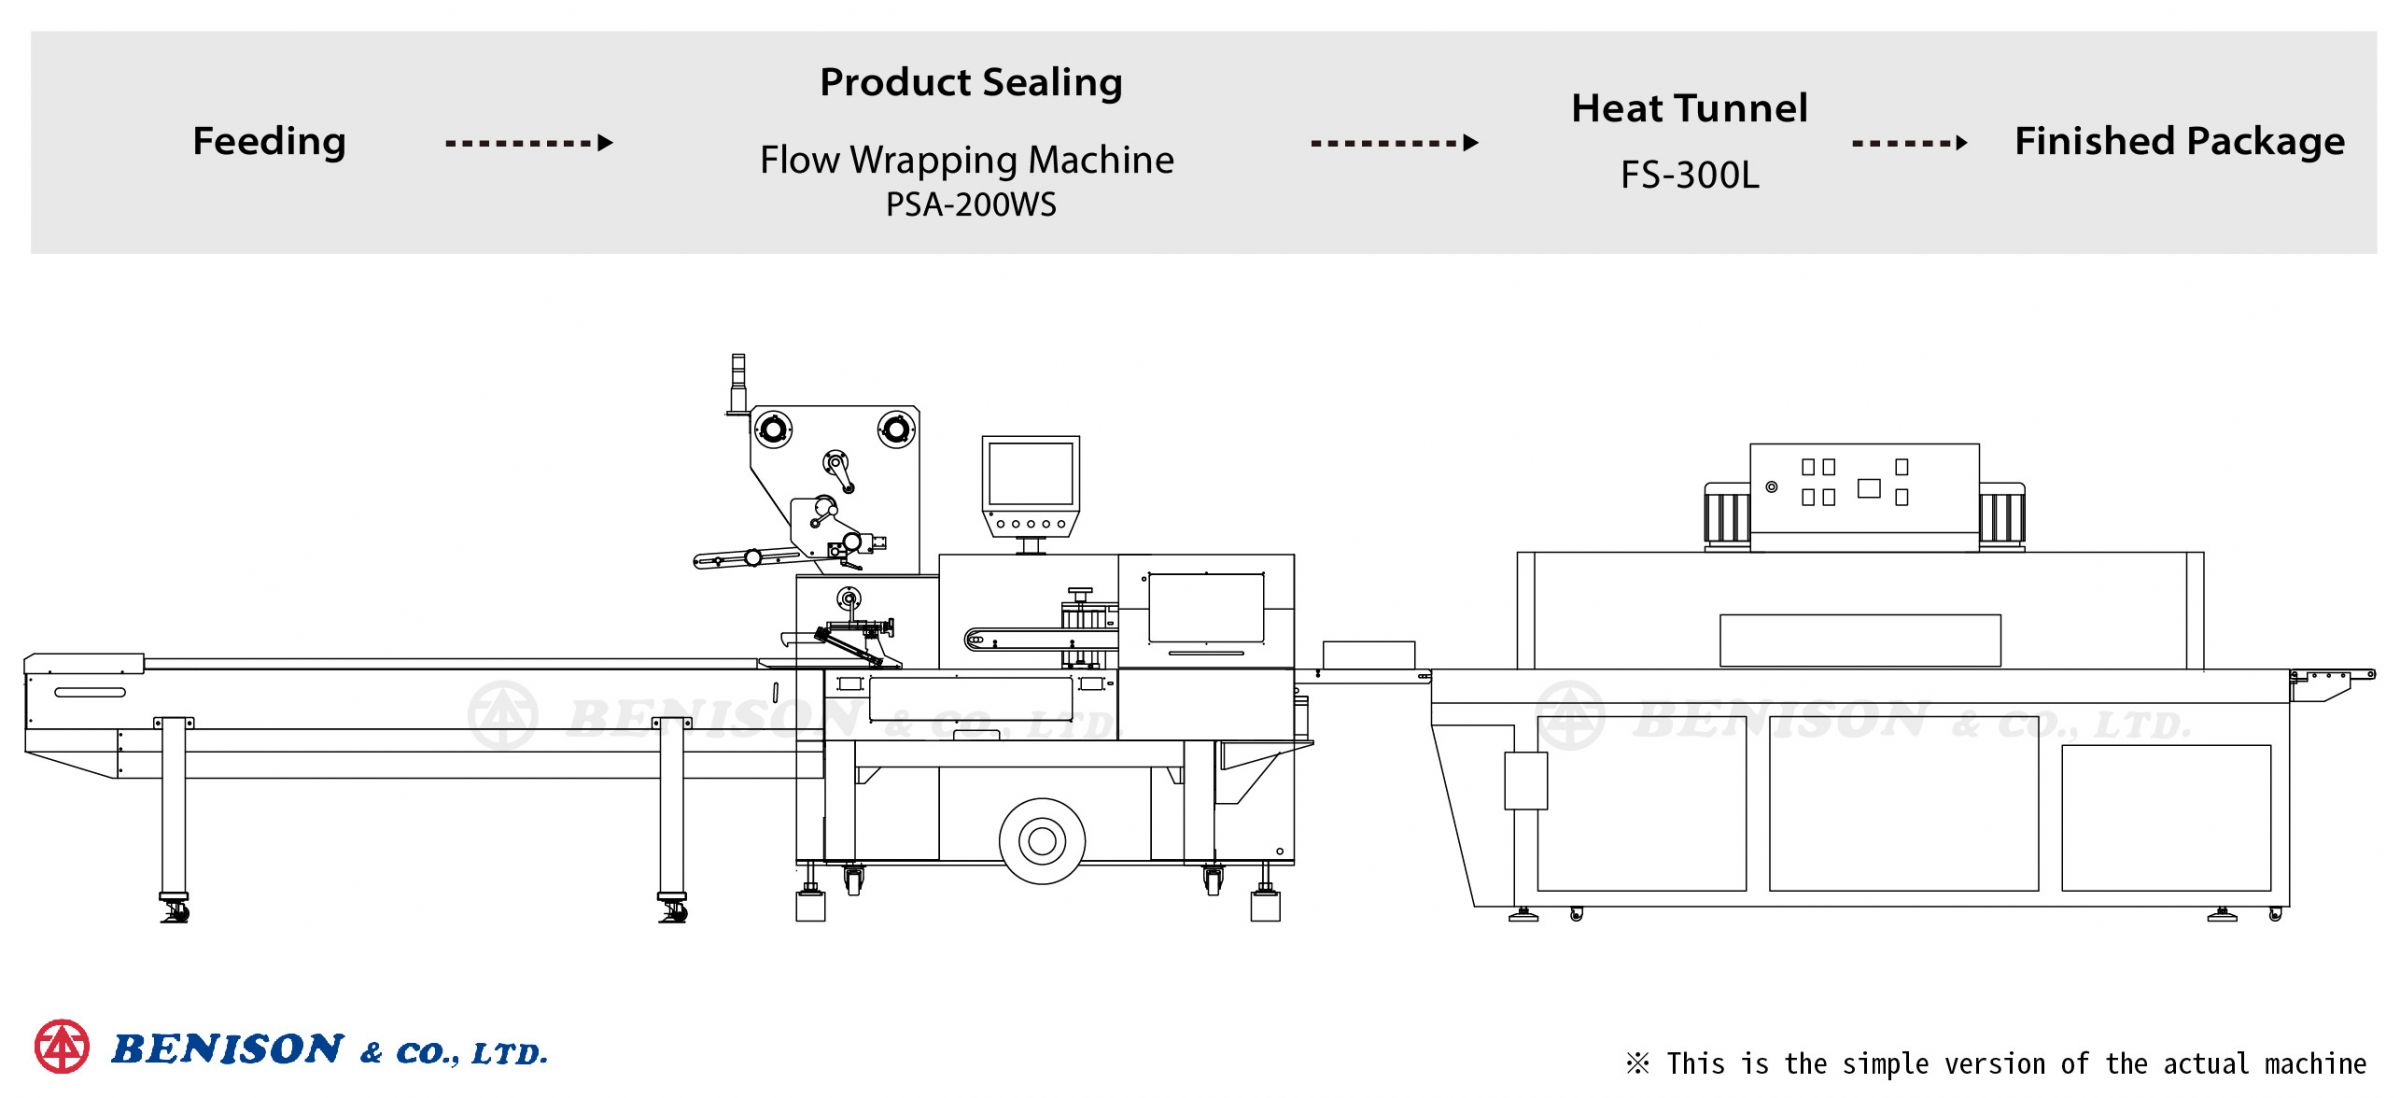 เครื่องห่อซอง PSA-200WS + อุ่น Heat Tunnel FS-300L สำหรับสินค้าป้องกัน